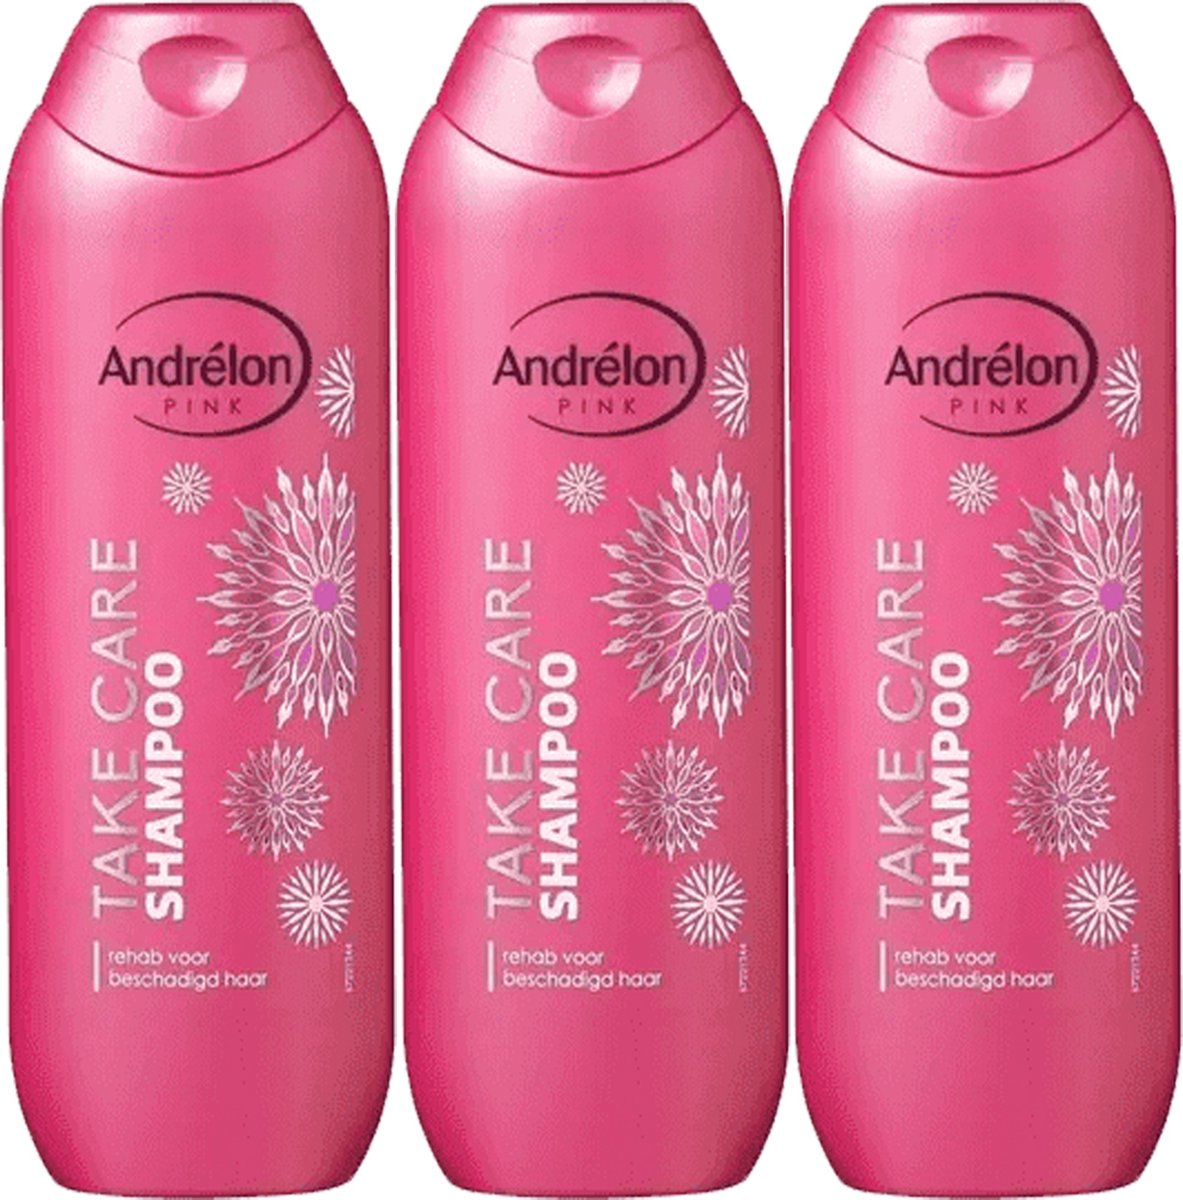 Andrélon Pink Take Care Shampoo - Beschadigd Haar - Pak Je Voordeel - 3 x 250 ml